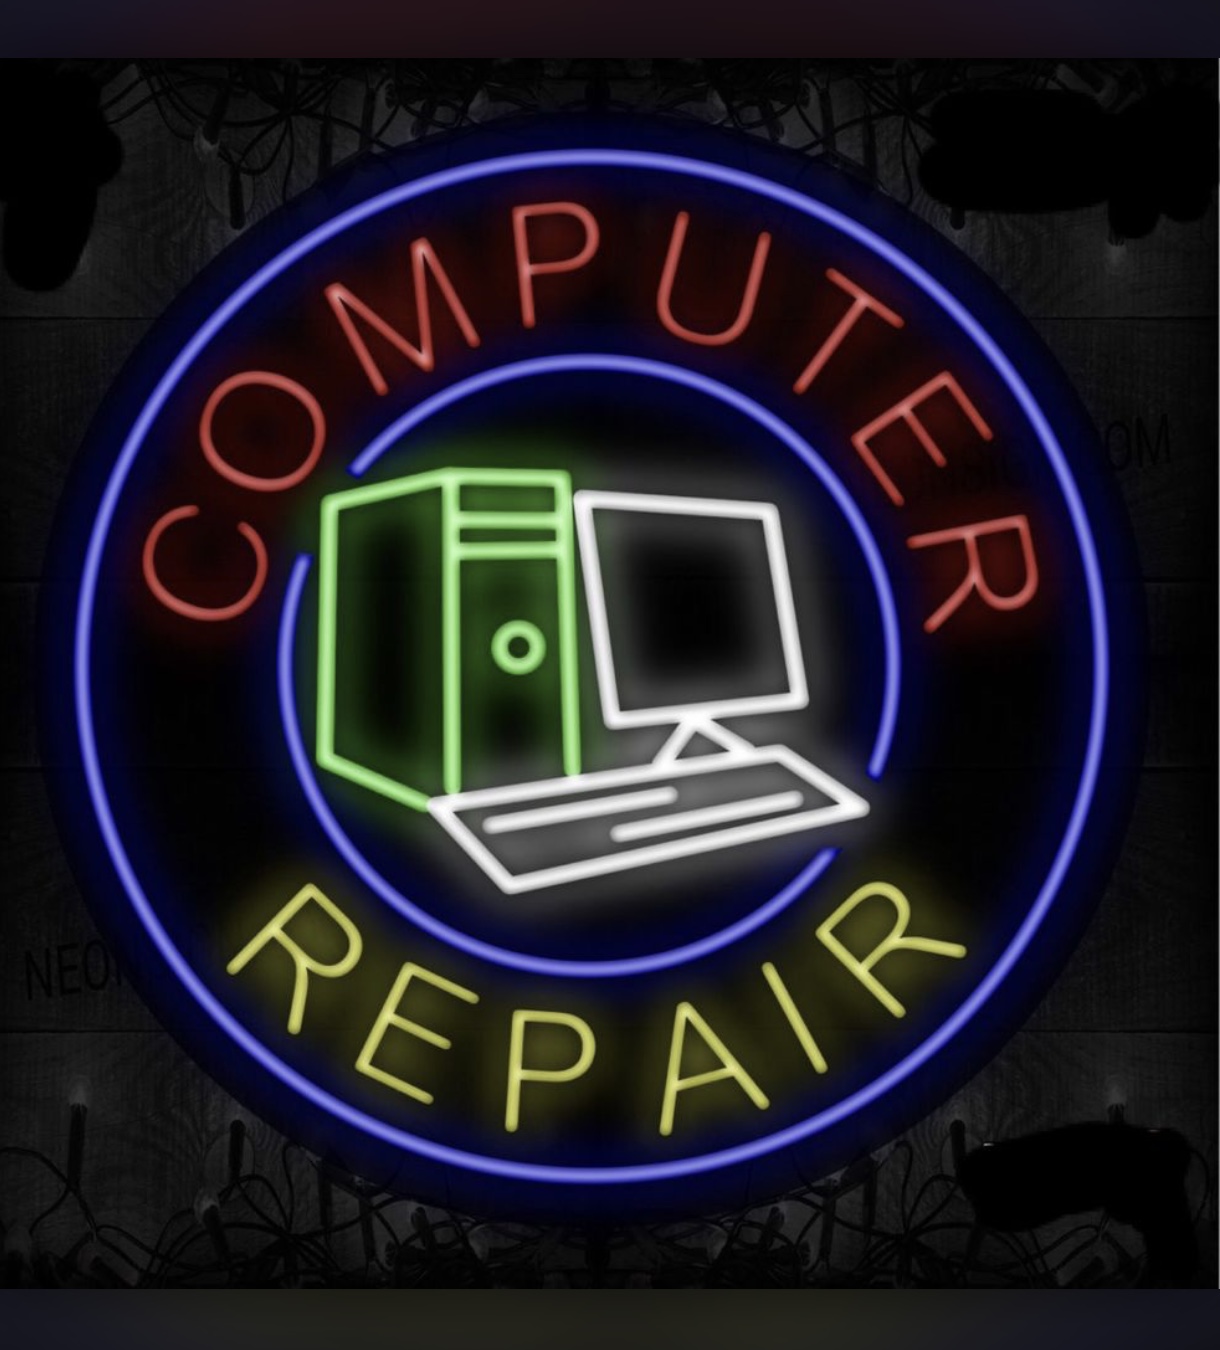 Golden Eagle Computer Services Logo